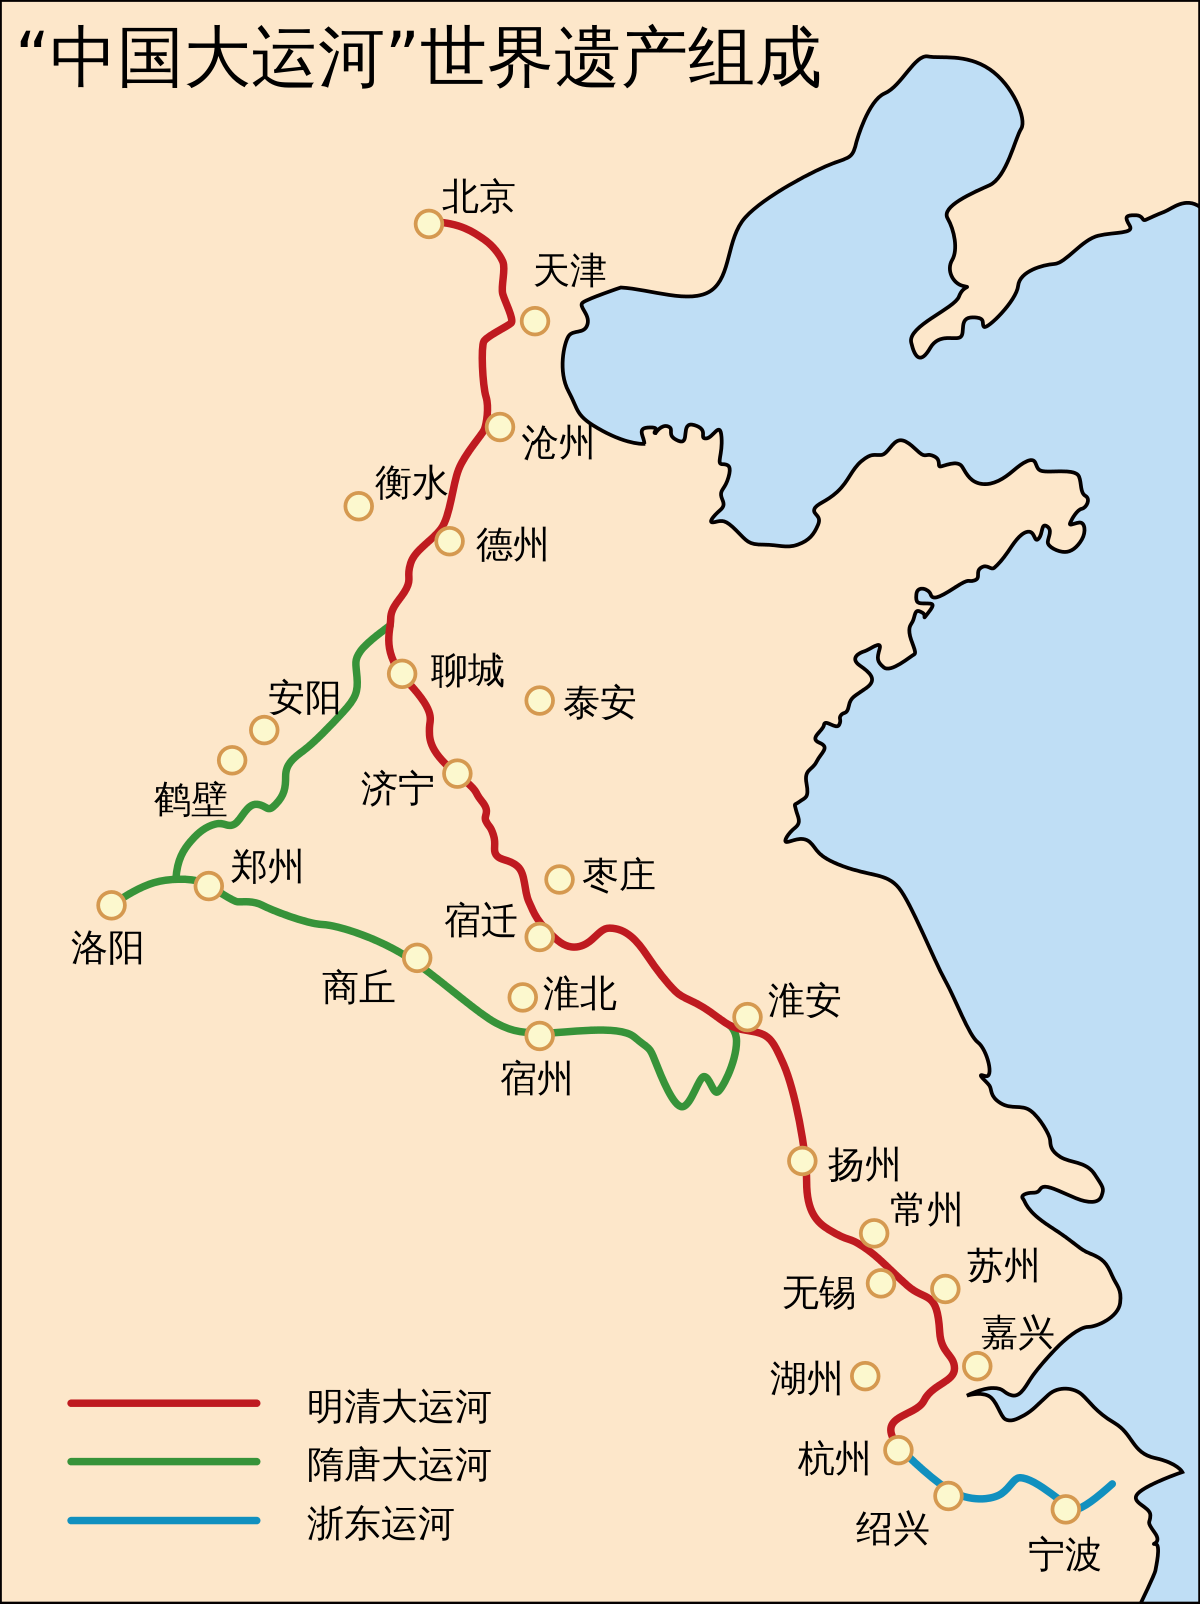 ファイル World Heritage Composition Of Grand Canal Of China Svg Wikipedia